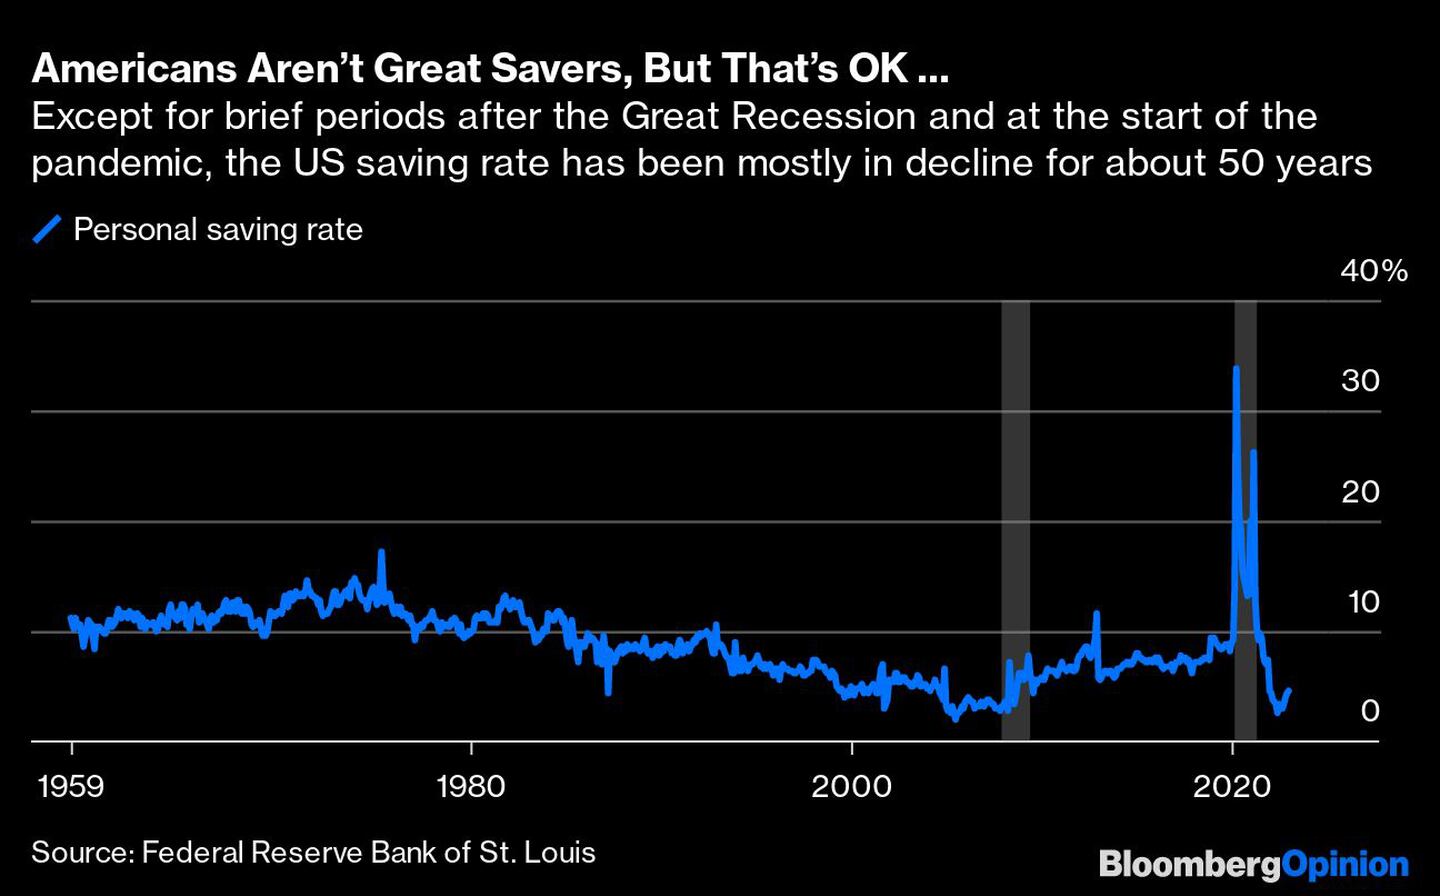  Salvo por breves periodos tras la Gran Recesión y al inicio de la pandemia, la tasa de ahorro de Estados Unidos ha ido disminuyendo durante unos 50 años.dfd